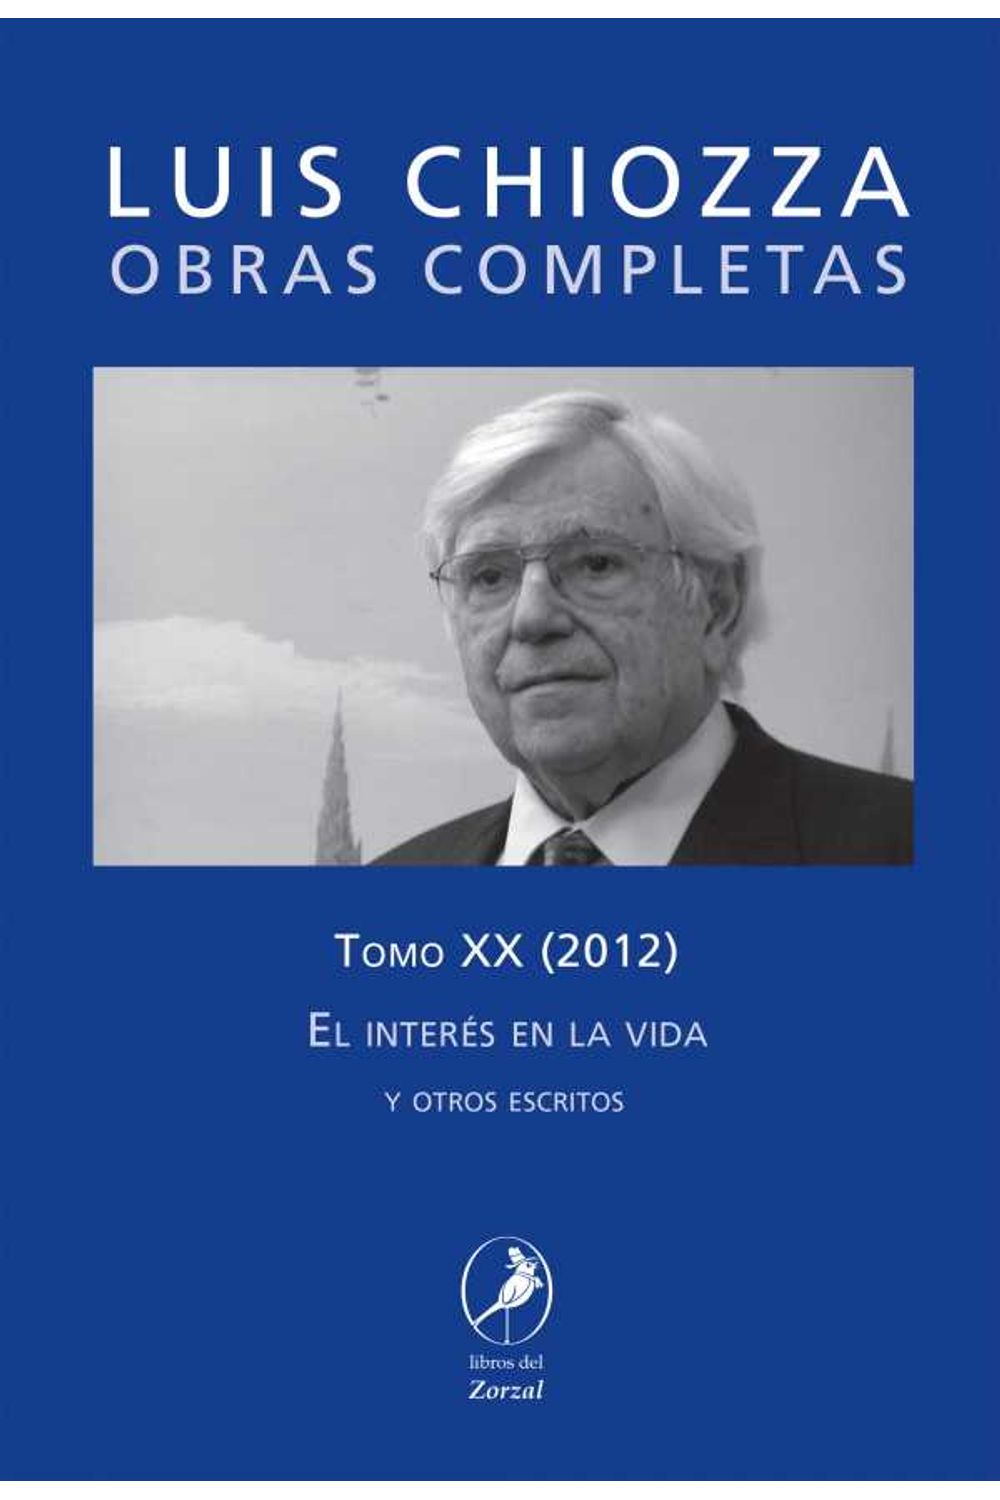 bw-obras-completas-de-luis-chiozza-tomo-xx-libros-del-zorzal-9789875994089